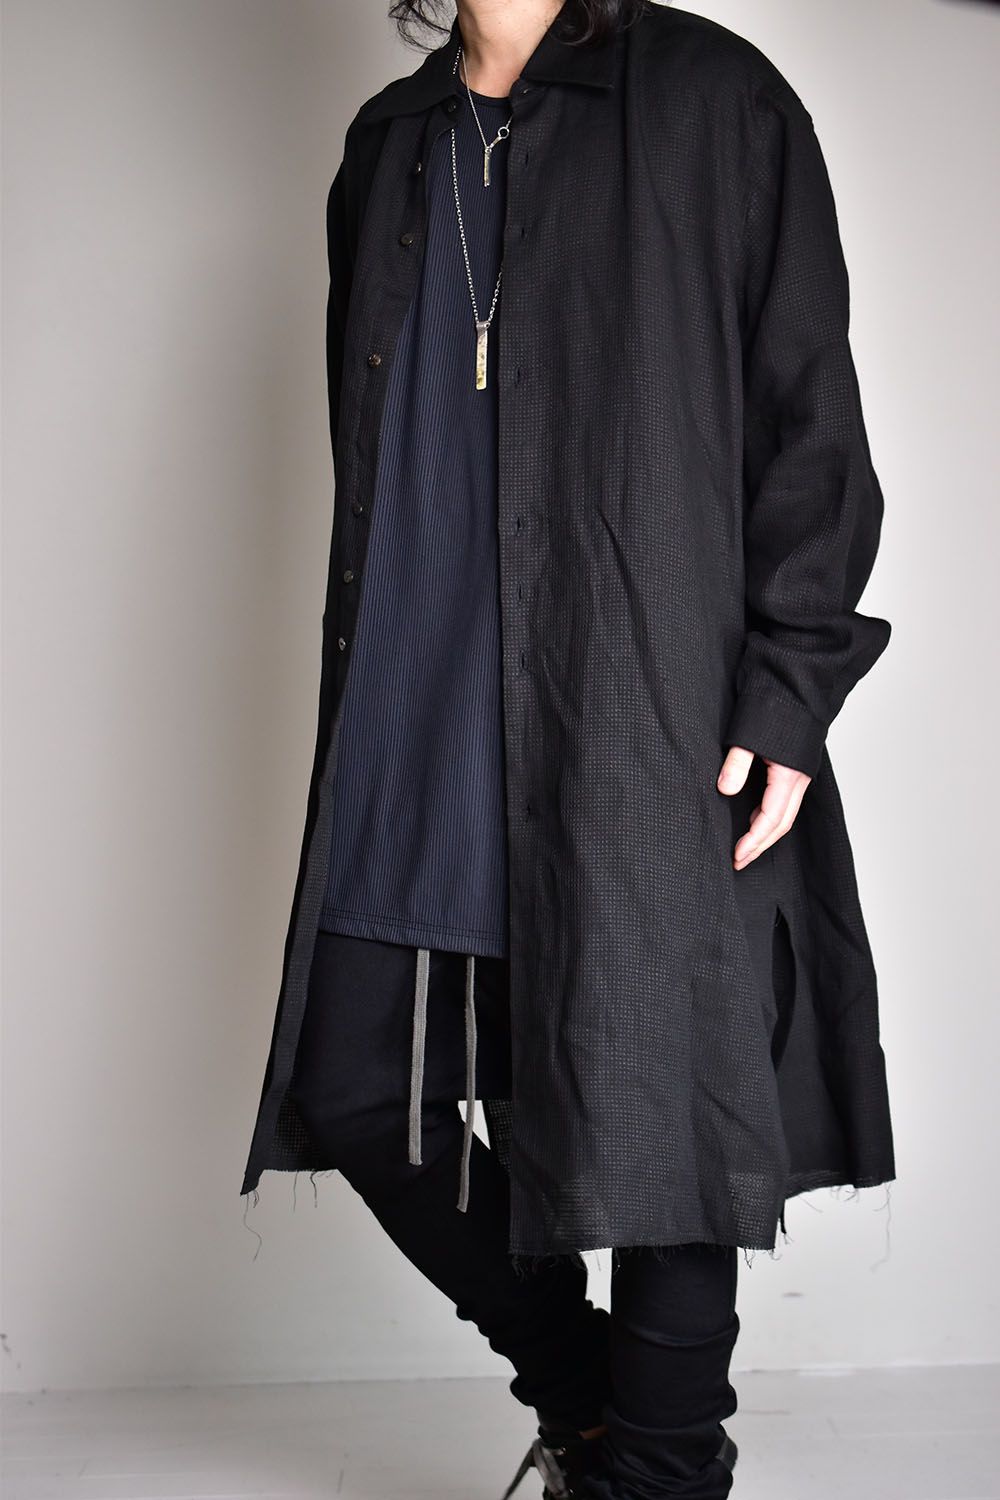 Azami Shirts"Black"/アザミシャツ"ブラック"